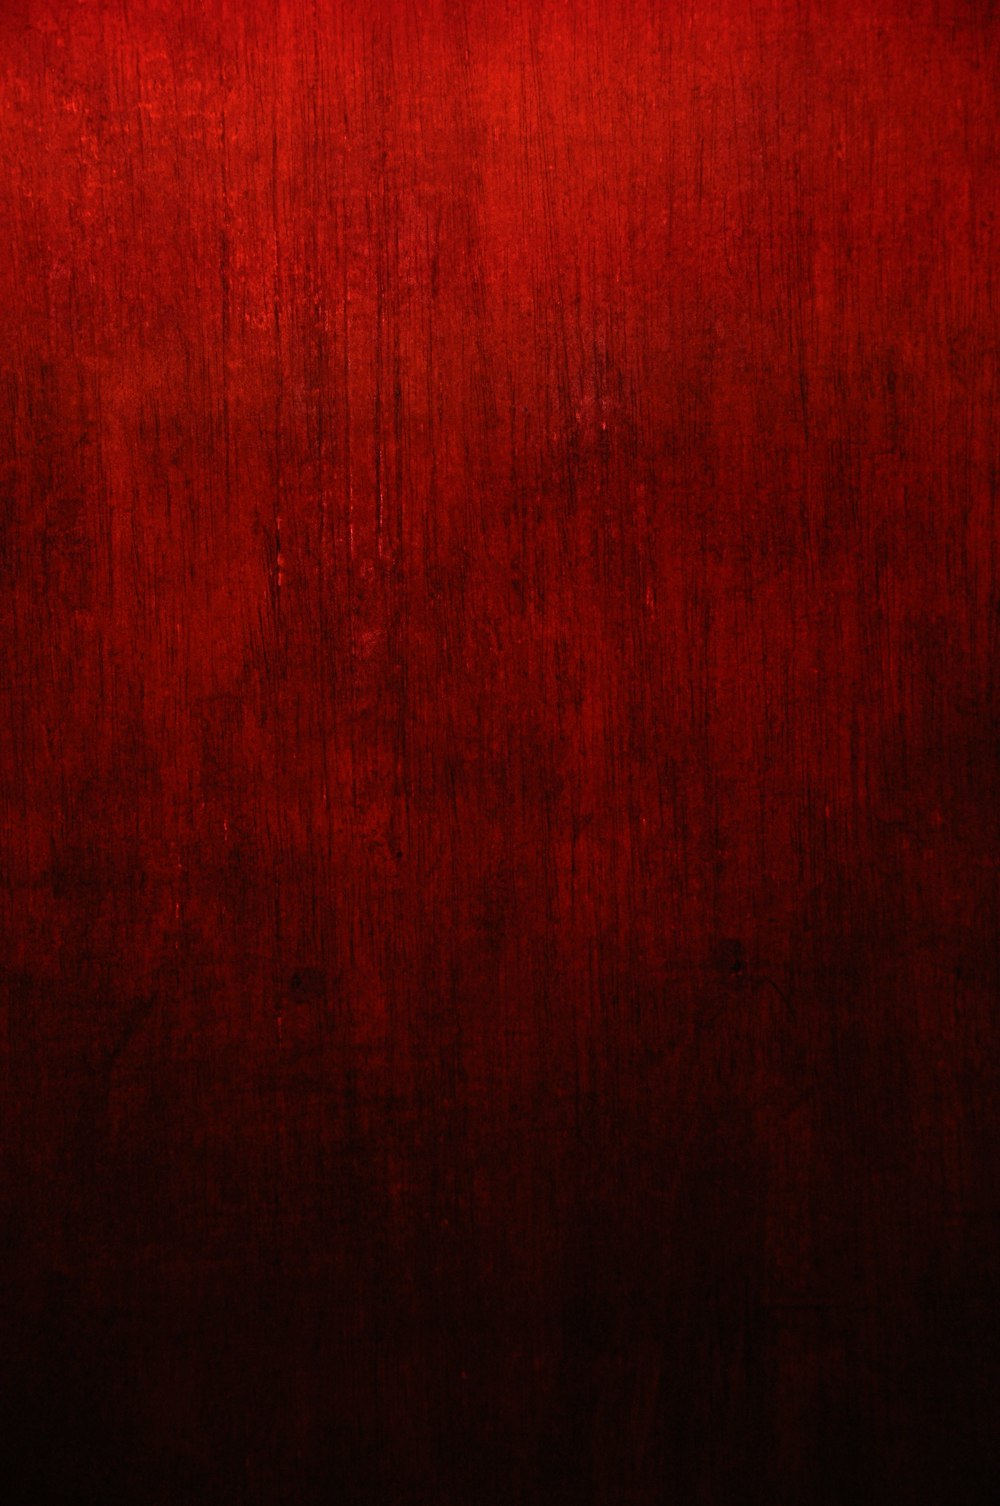 Hình nền đỏ sặc sỡ: Sở hữu một bức ảnh đẹp ngay trên điện thoại của bạn với hình nền đỏ sặc sỡ này. Với màu sắc sáng tạo và phong phú, bức ảnh này sẽ chắc chắn đem đến cho bạn cảm giác vô cùng độc đáo.